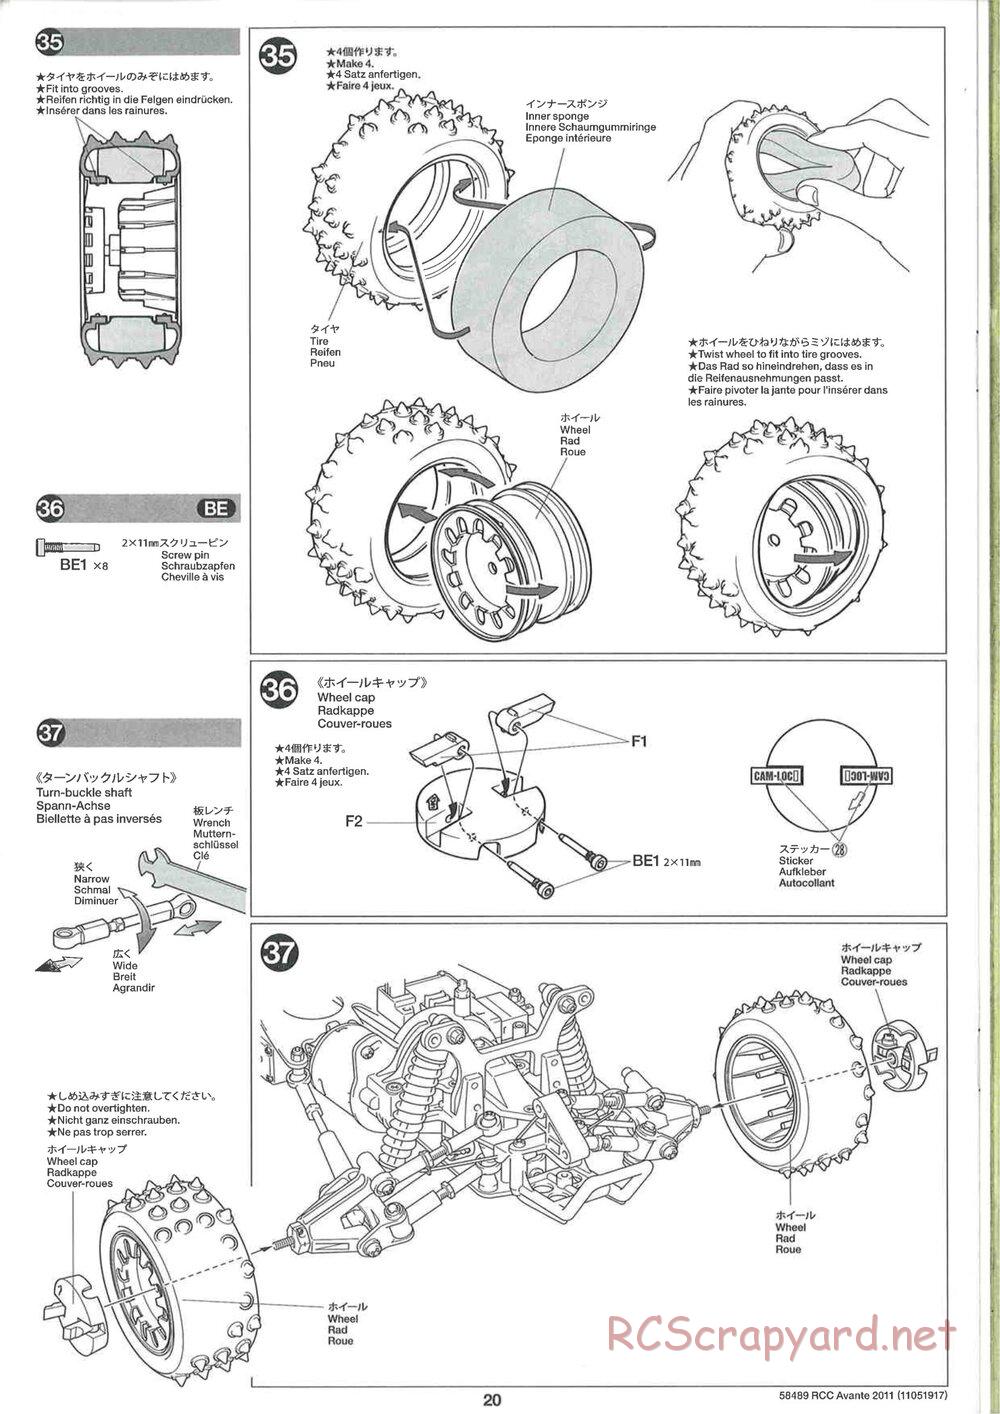 Tamiya - Avante 2011 - AV Chassis - Manual - Page 20